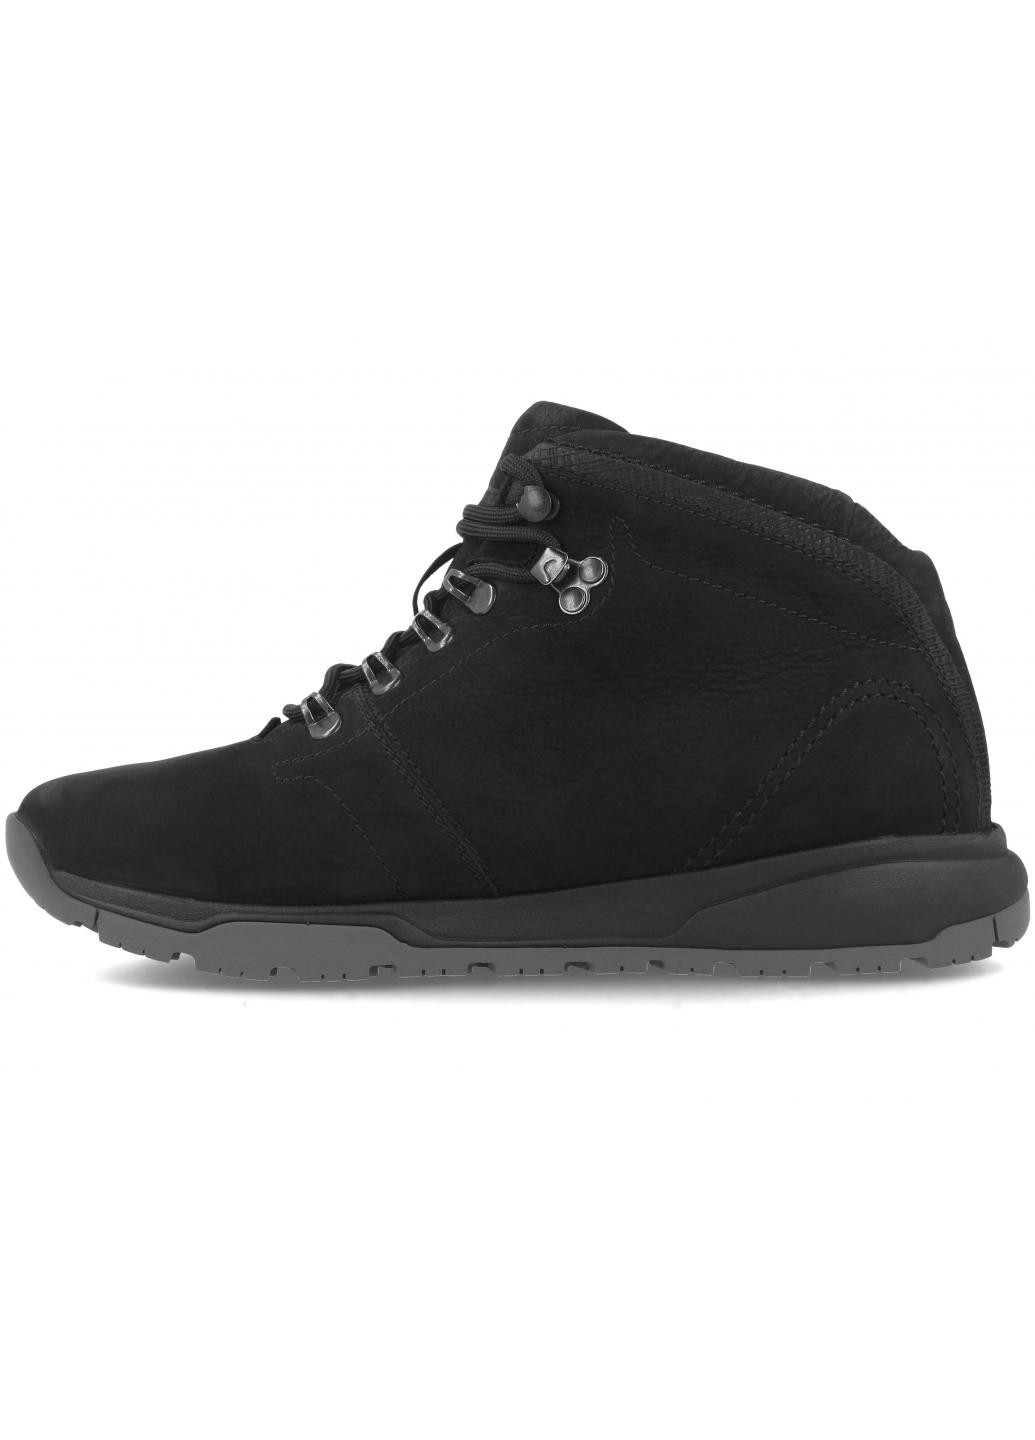 Черные зимние мужские ботинки tyres m8908-02 michelin sole Forester